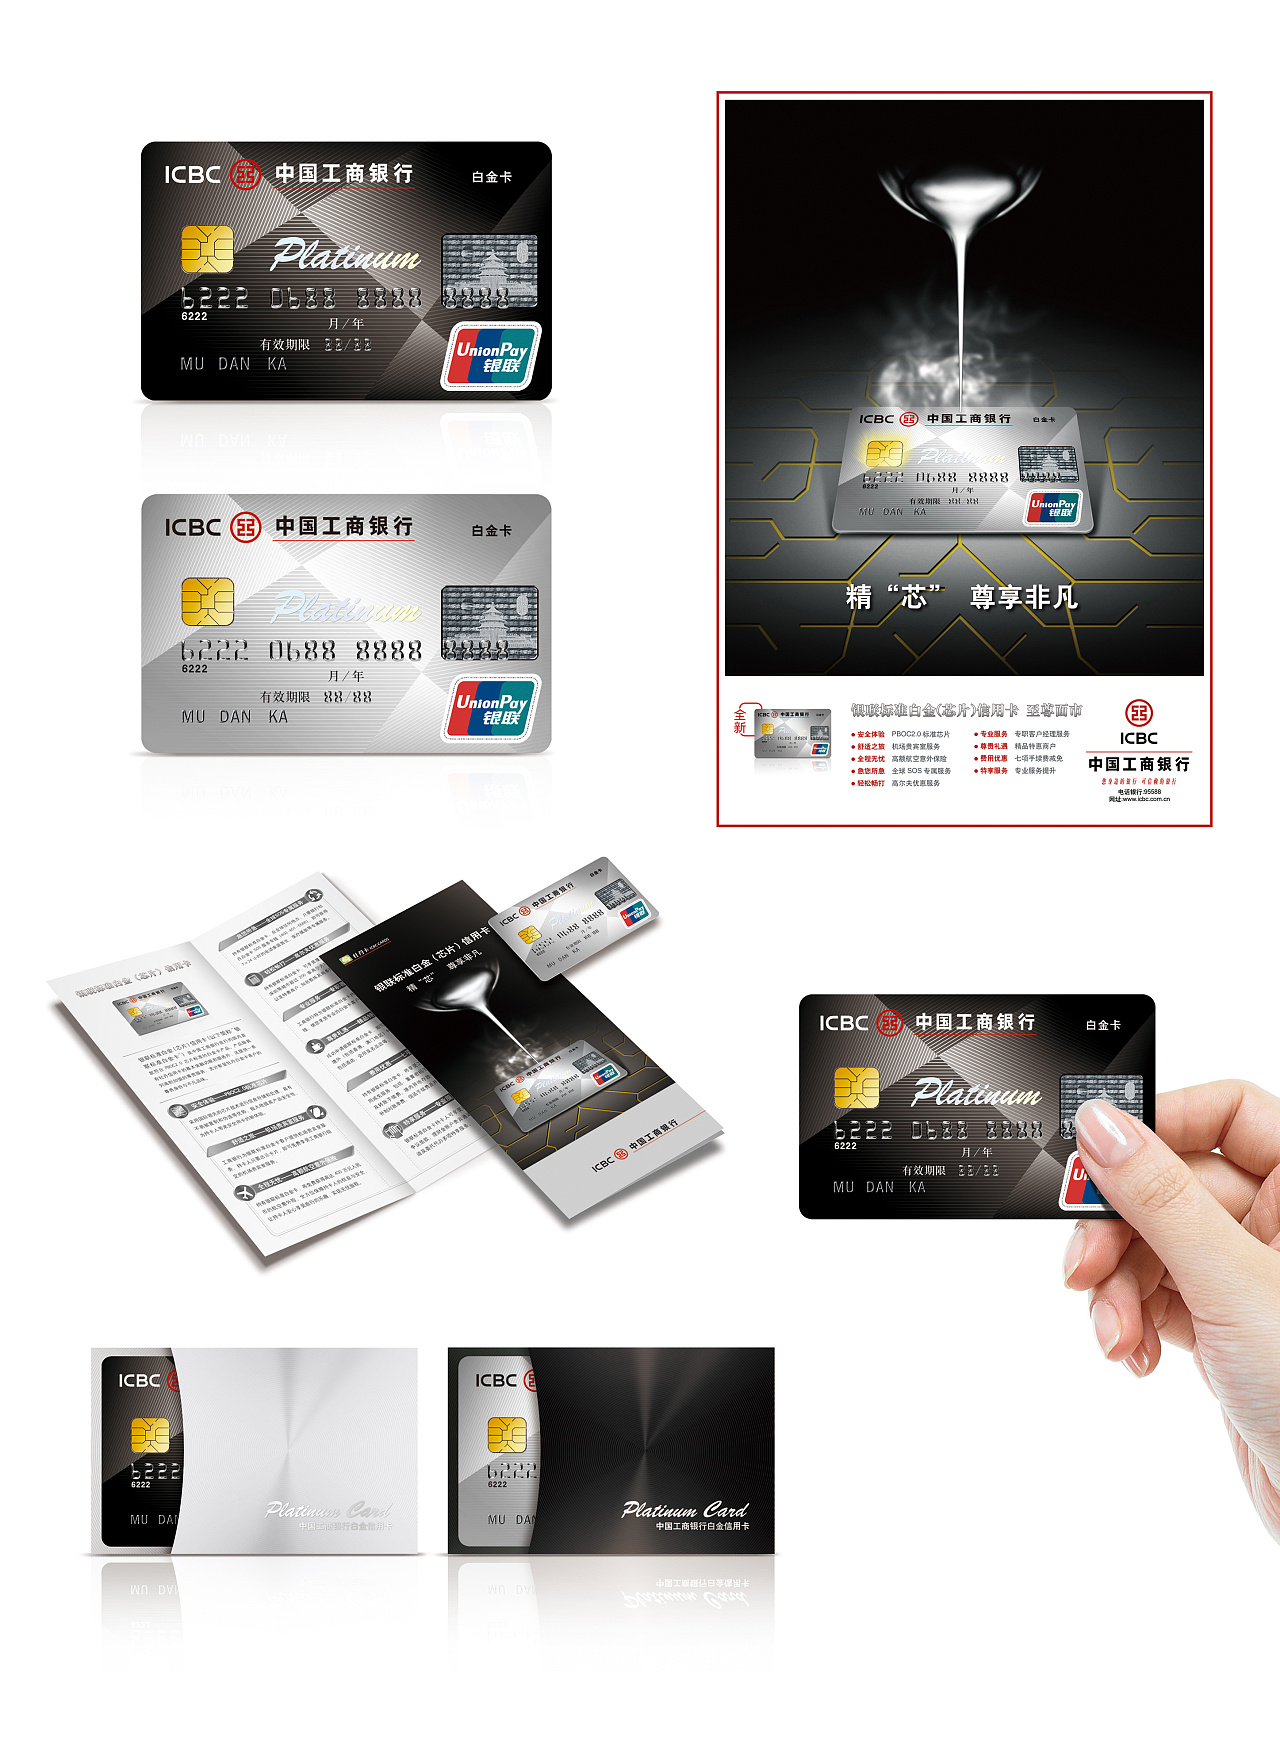 招商银行卡怎么看是一类卡还是二类卡 两者有什么区别？ - 知识 - 至诚财经网